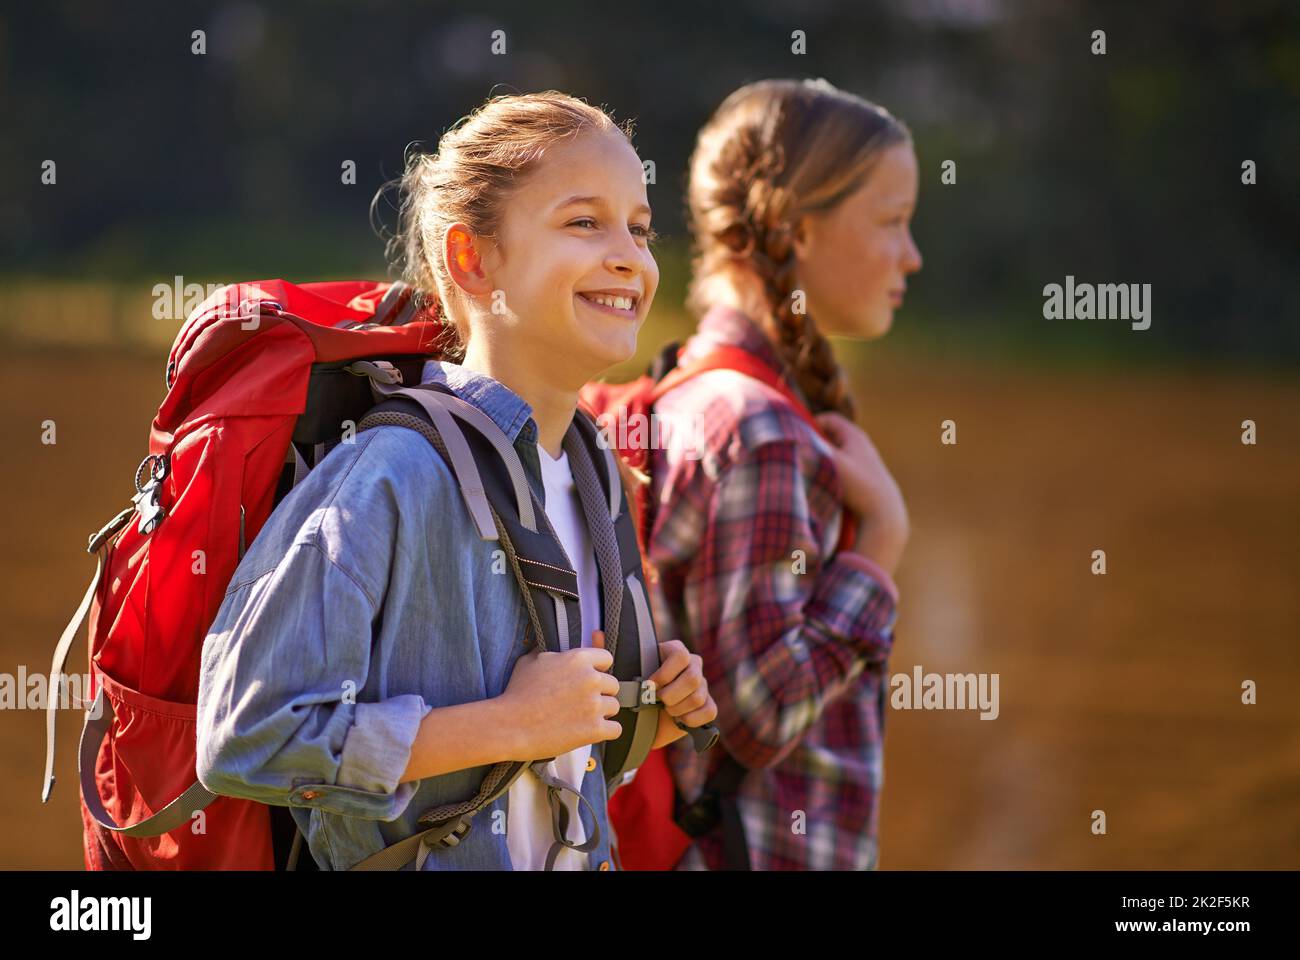 Sorglos in der Natur. Aufnahme von zwei jungen Mädchen in Rucksäcken, die zusammen spazieren gehen. Stockfoto